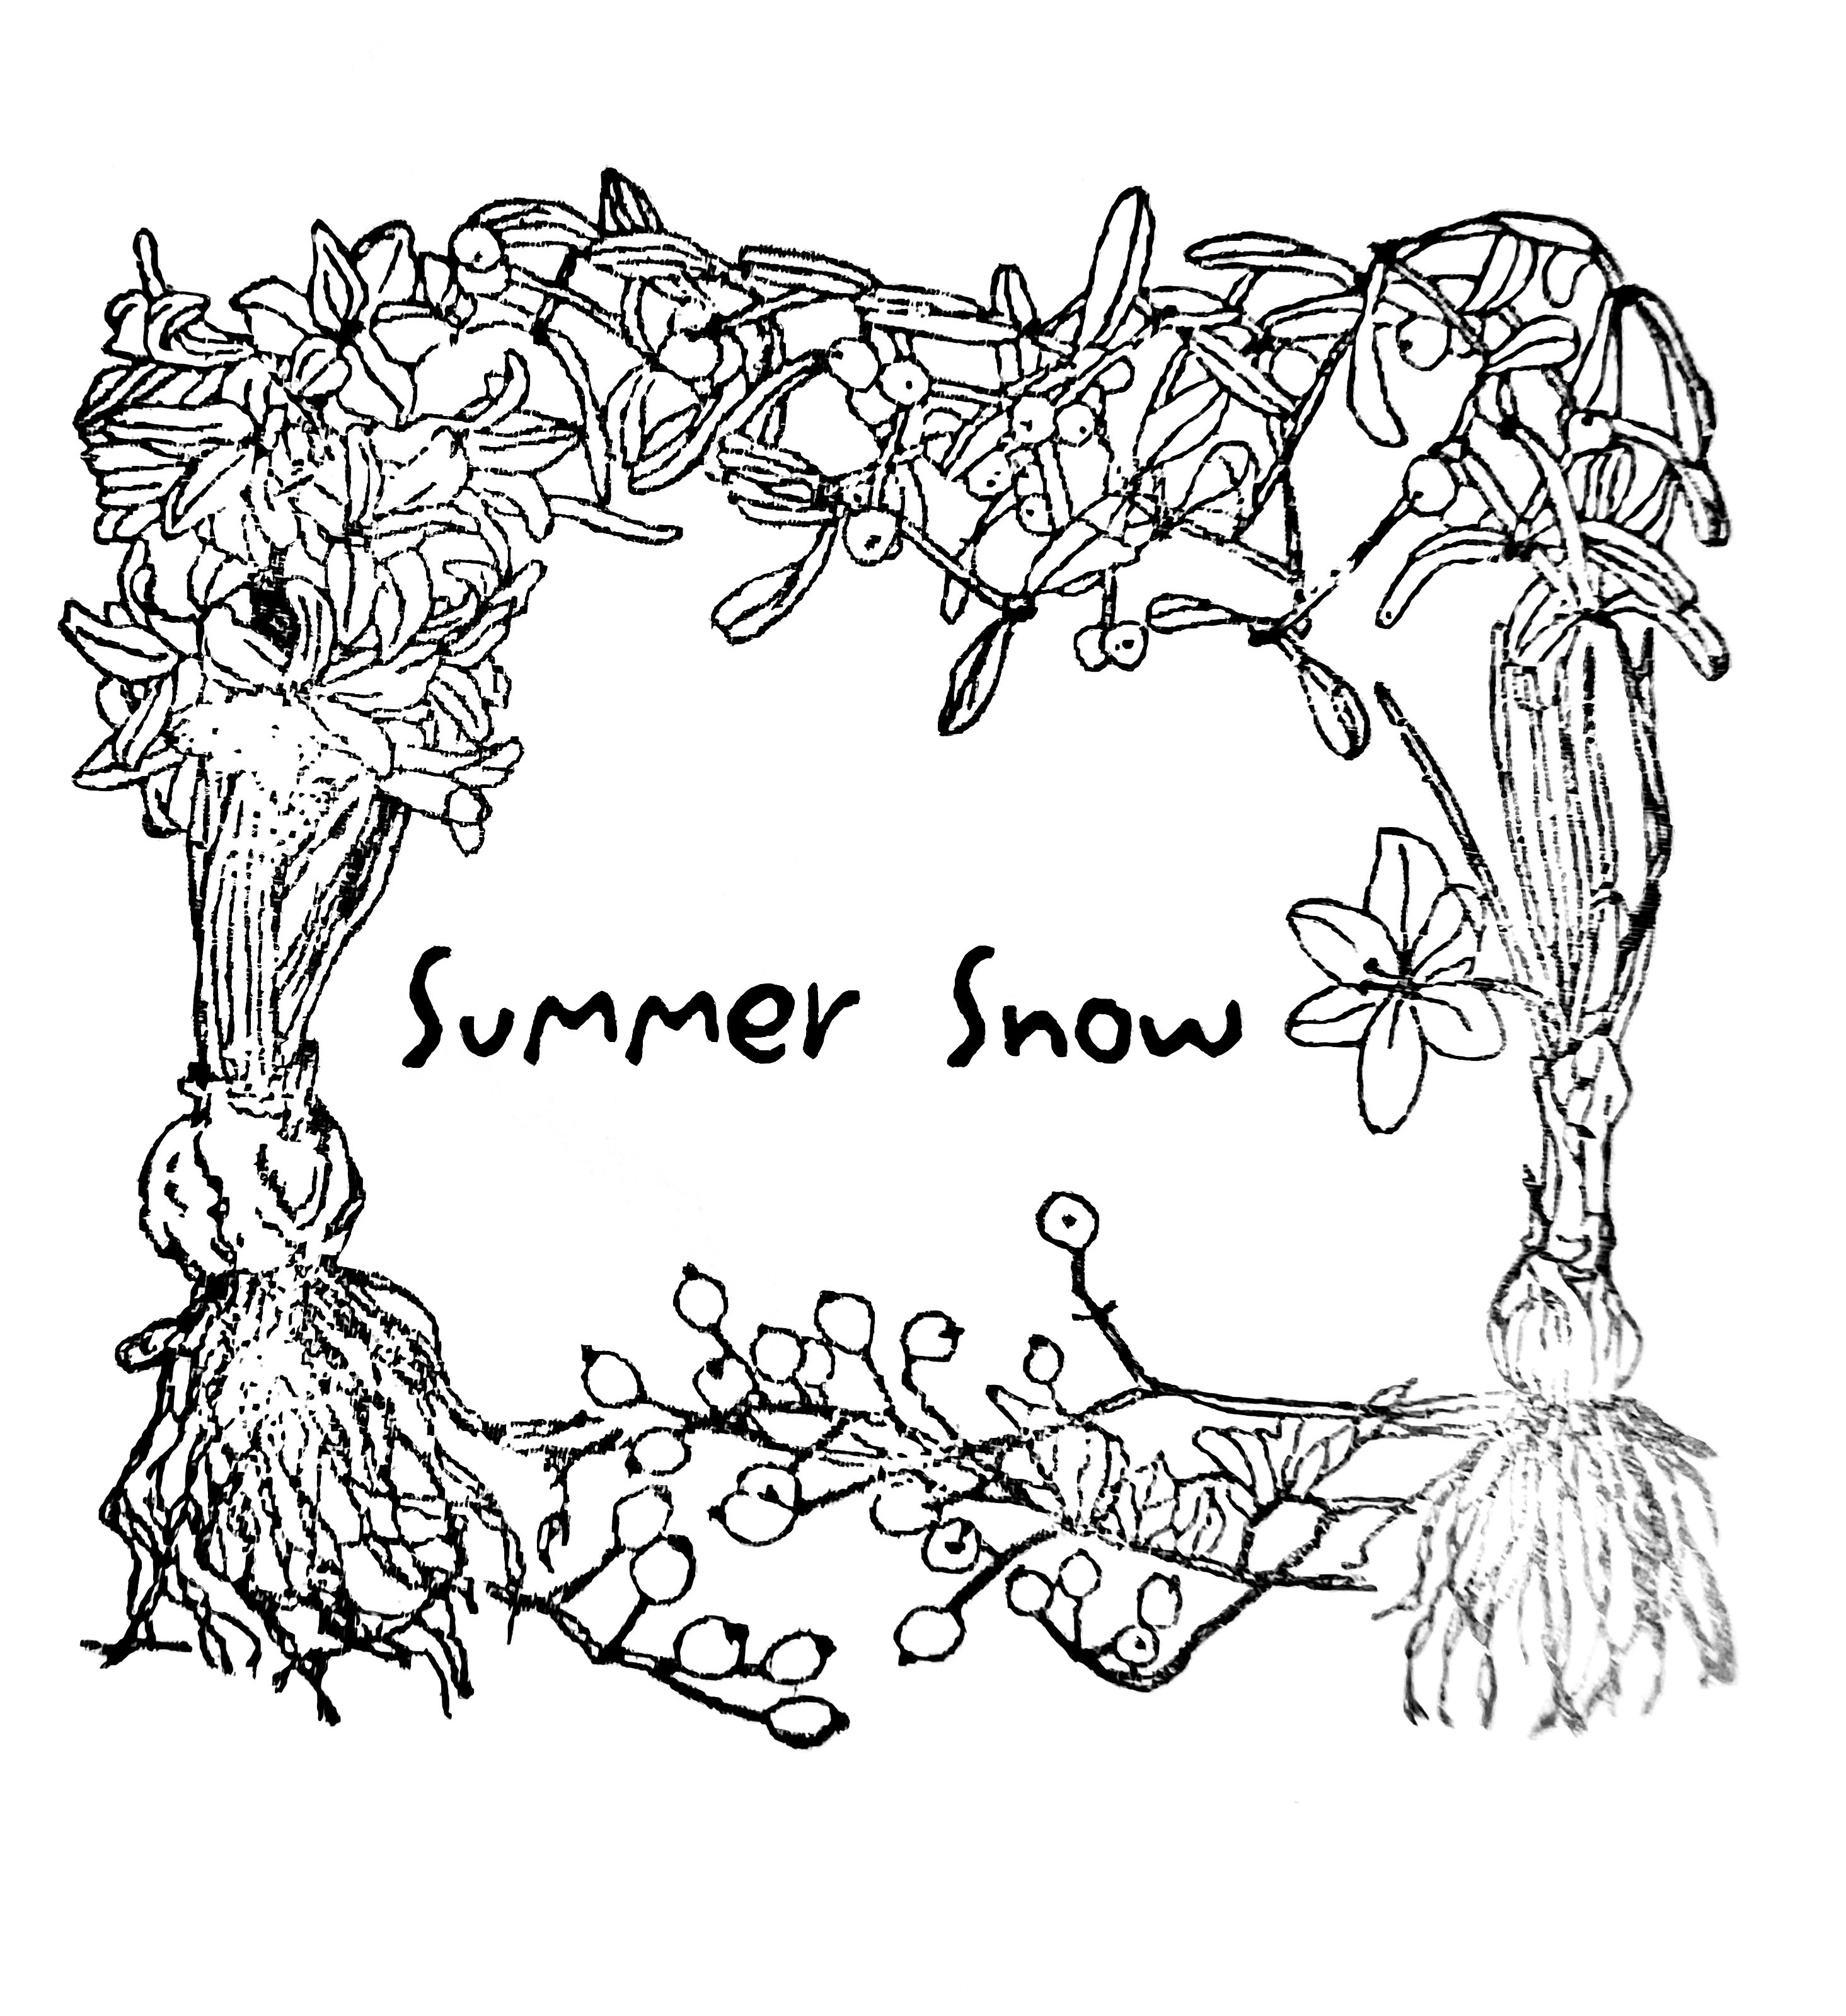 ドライフラワーブーケ・スワッグ - summer snow 夏雪